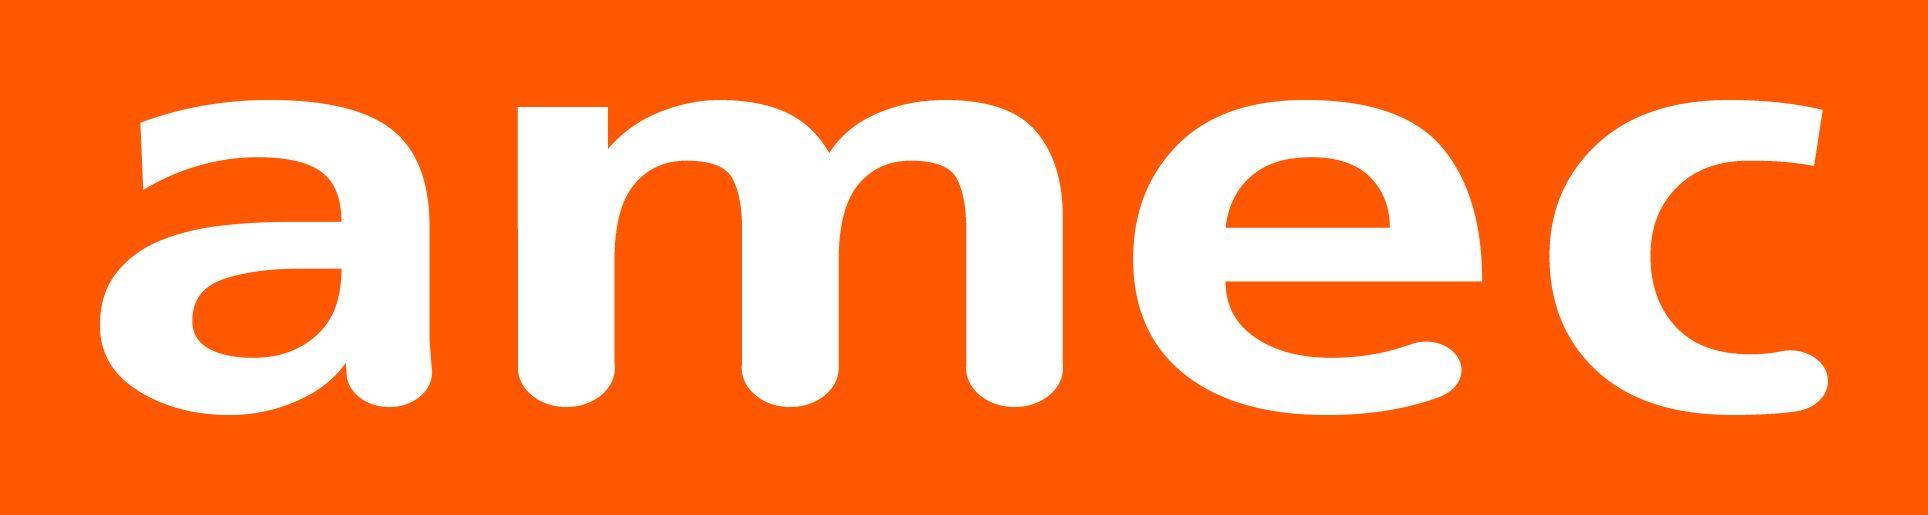 Orange and White Logo - Logos - AMEC